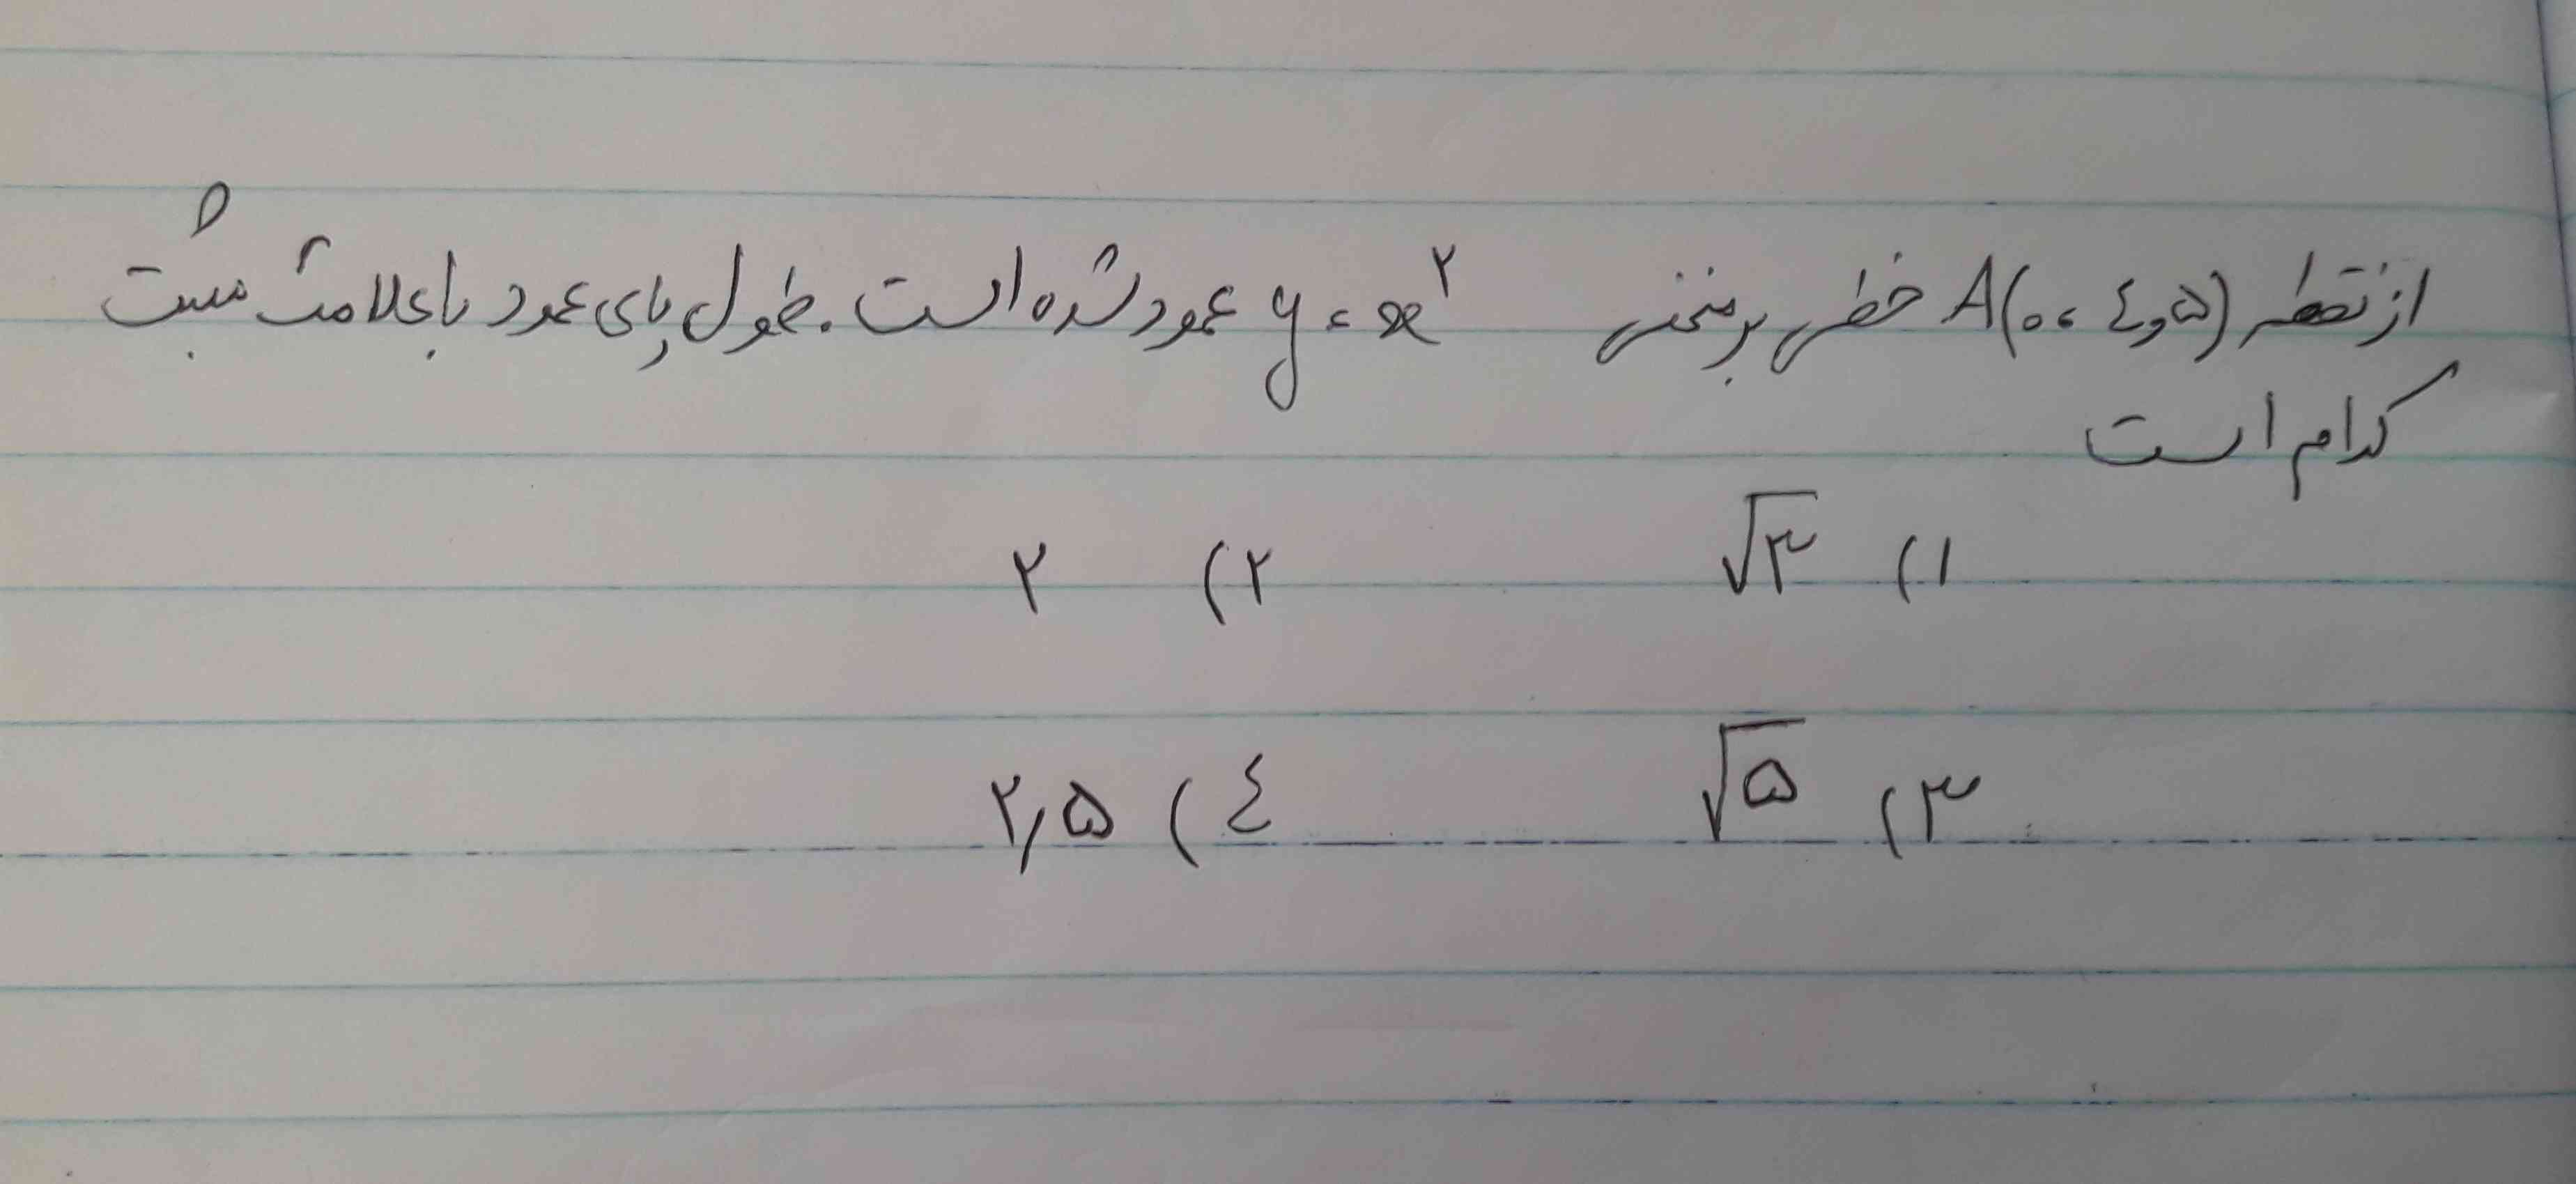 از نقطه A(0,4.5)خطی بر منحنی y=xبه توان 2 عمود شده است.طول پای عمود با علامت مثبت کدام است؟